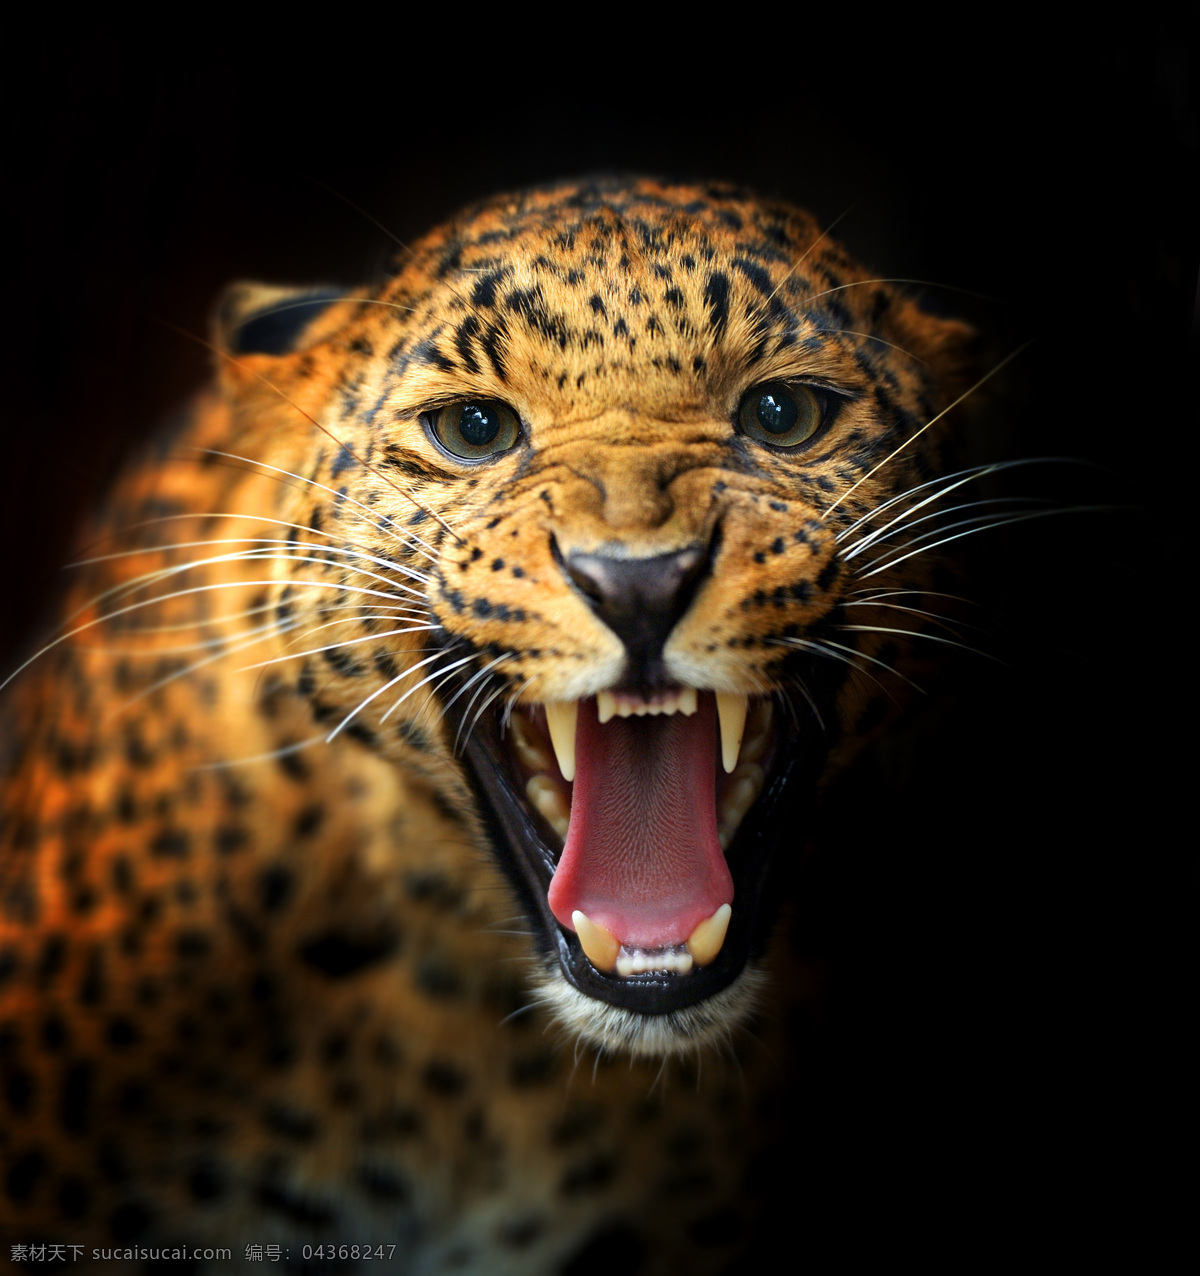 豹子 猎豹 豹纹 猛兽 凶猛 豹子头 猫科动物 动物专辑 野生动物 生物世界